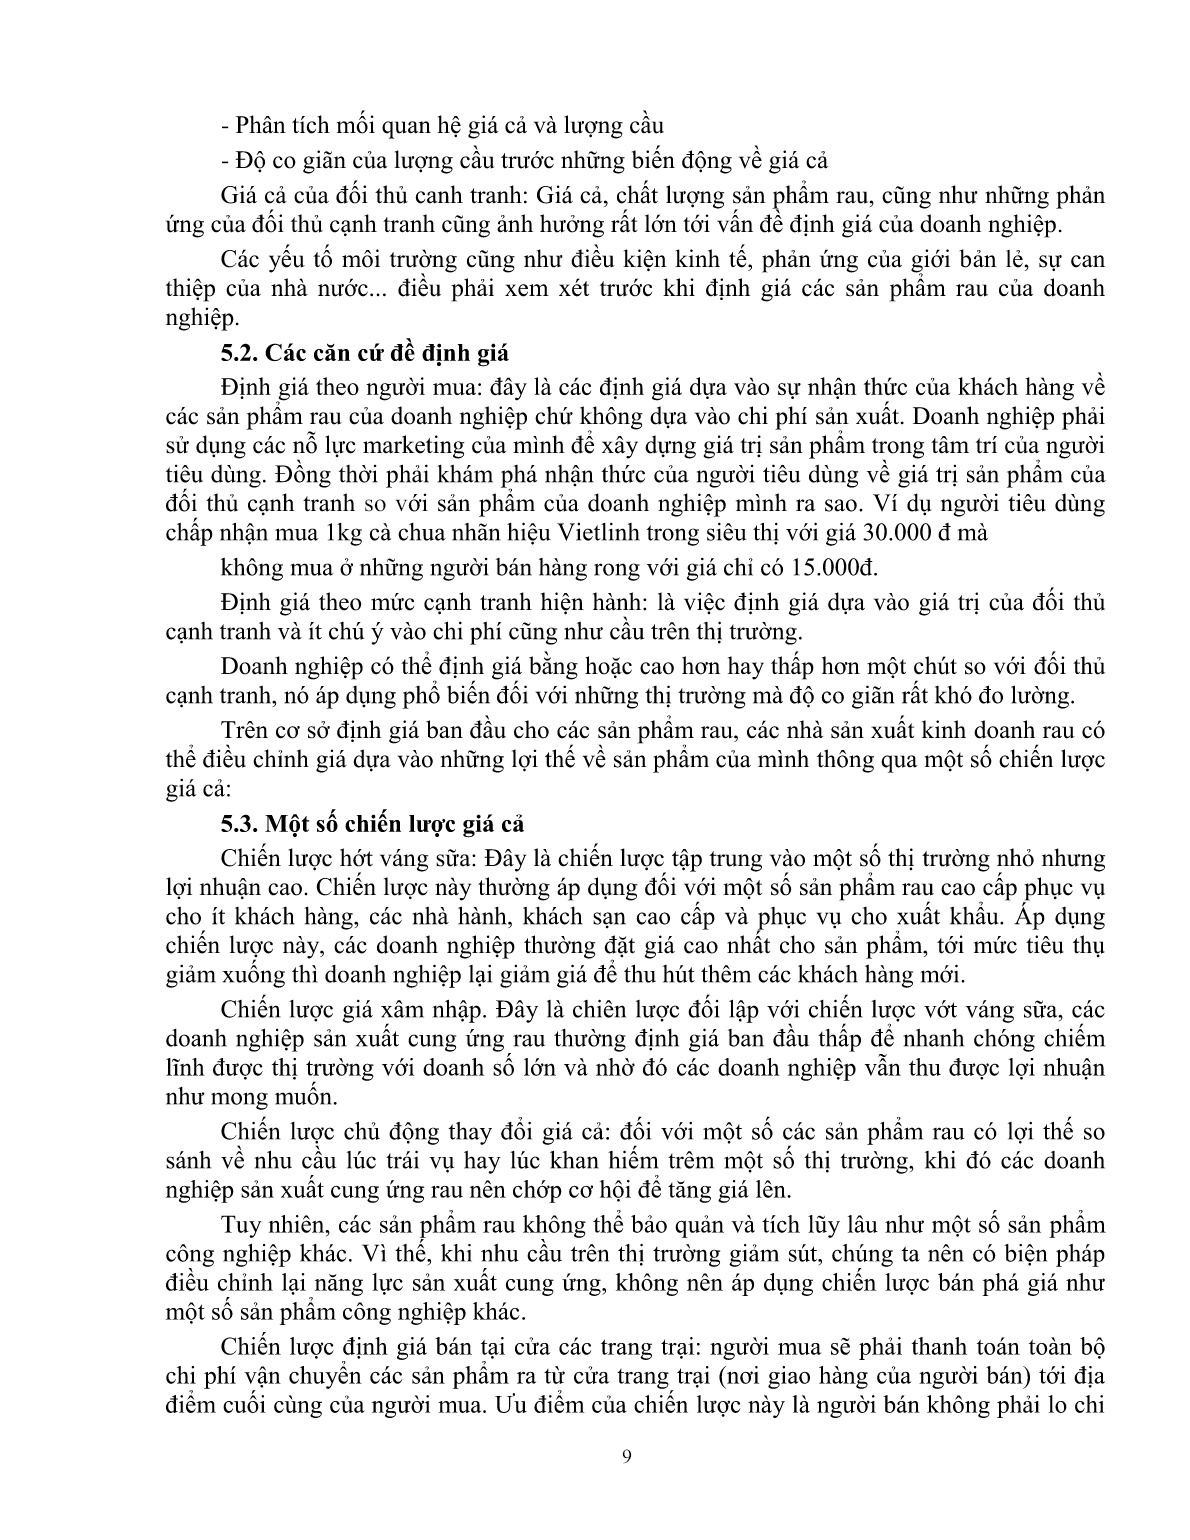 Giáo trình mô đun Tiêu thụ sản phẩn rau an toàn (Trình độ: Đào tạo dưới 03 tháng) trang 10